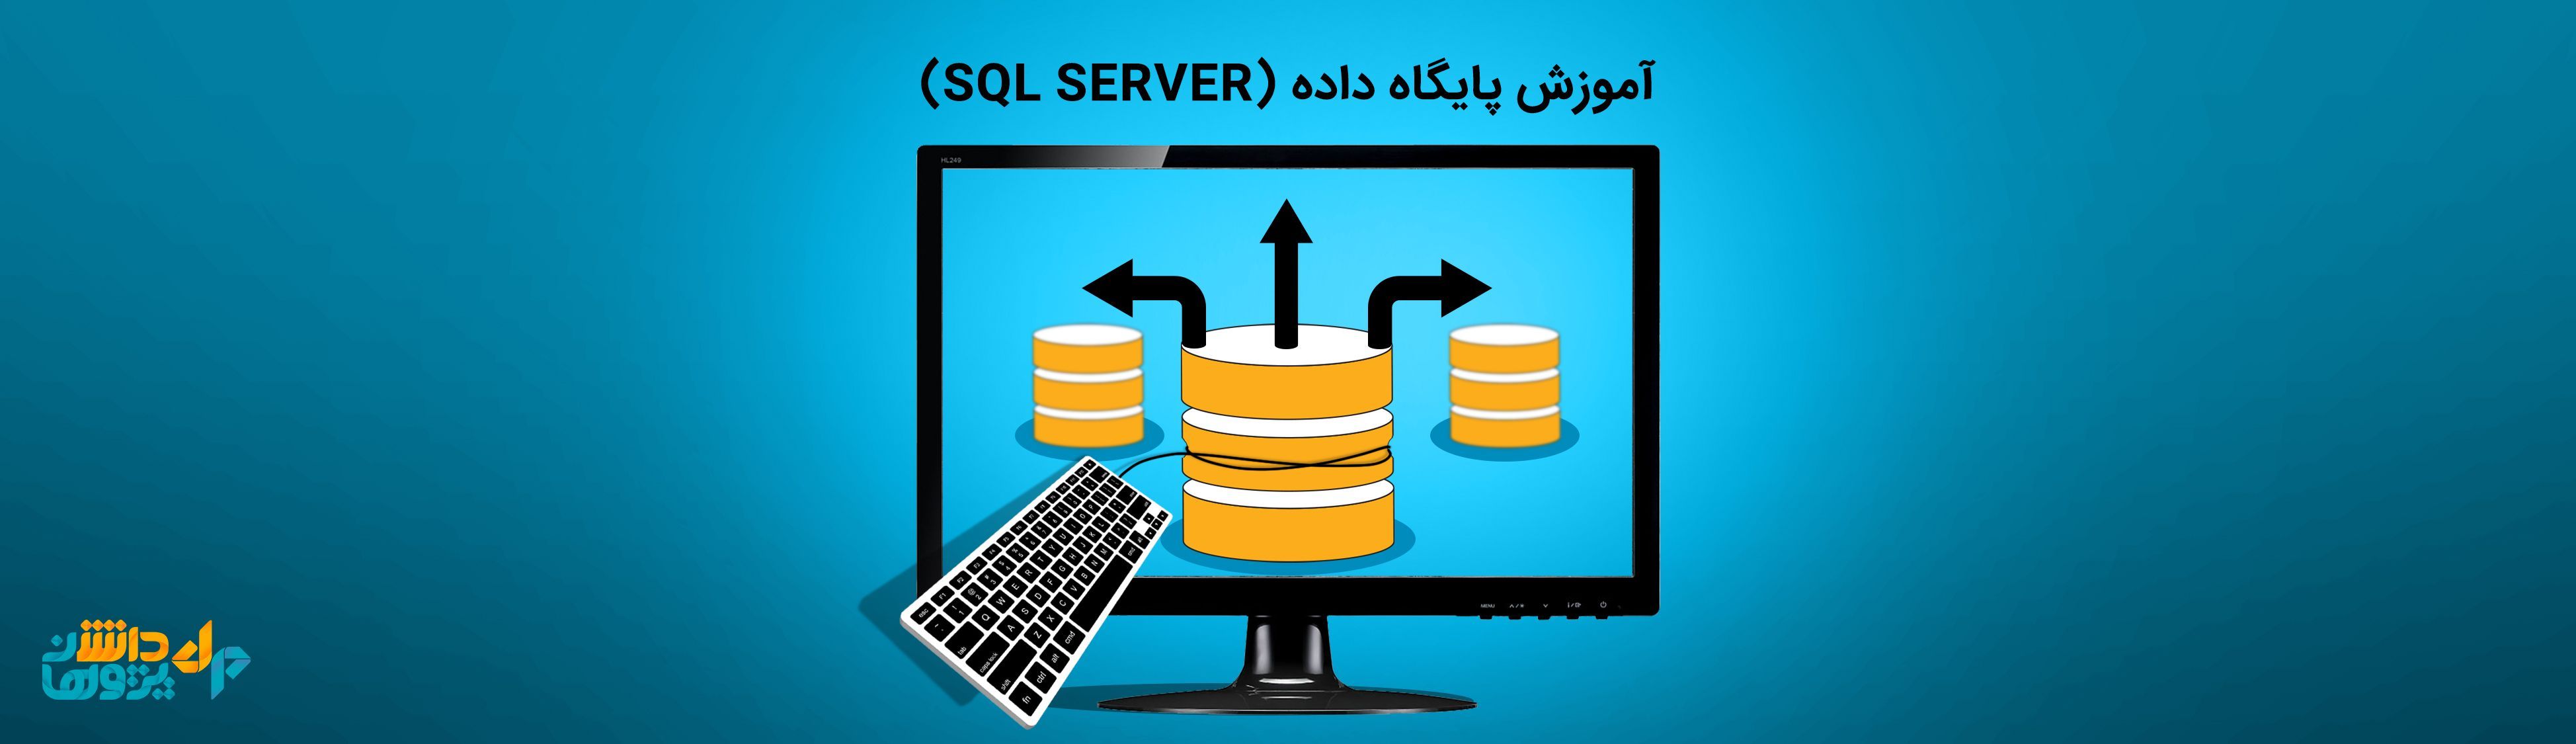 آموزش پایگاه داده (sql server)